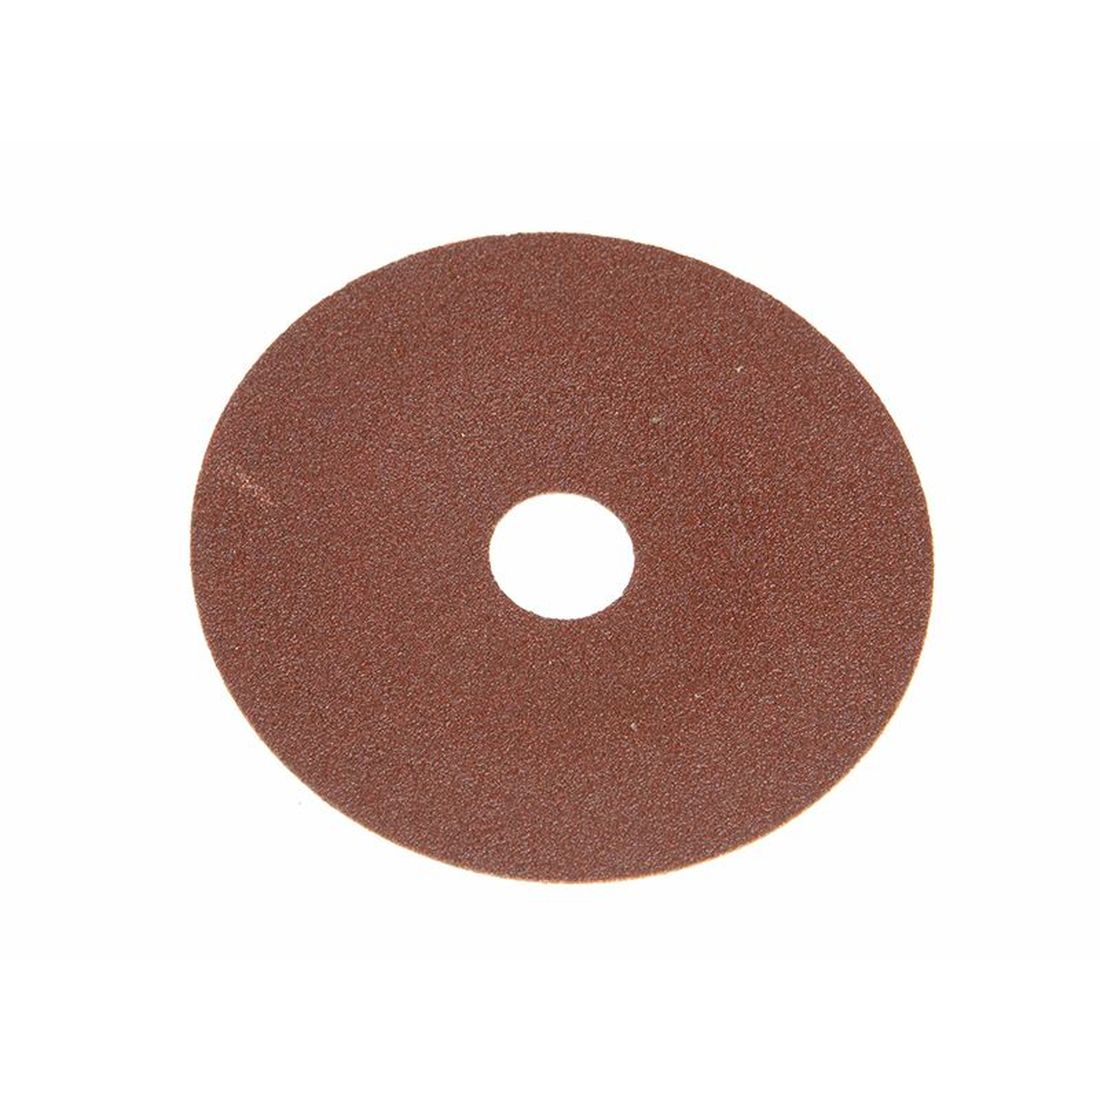 Faithfull Resin Bonded Sanding Discs 178 x 22mm 120G (Pack 25)                            